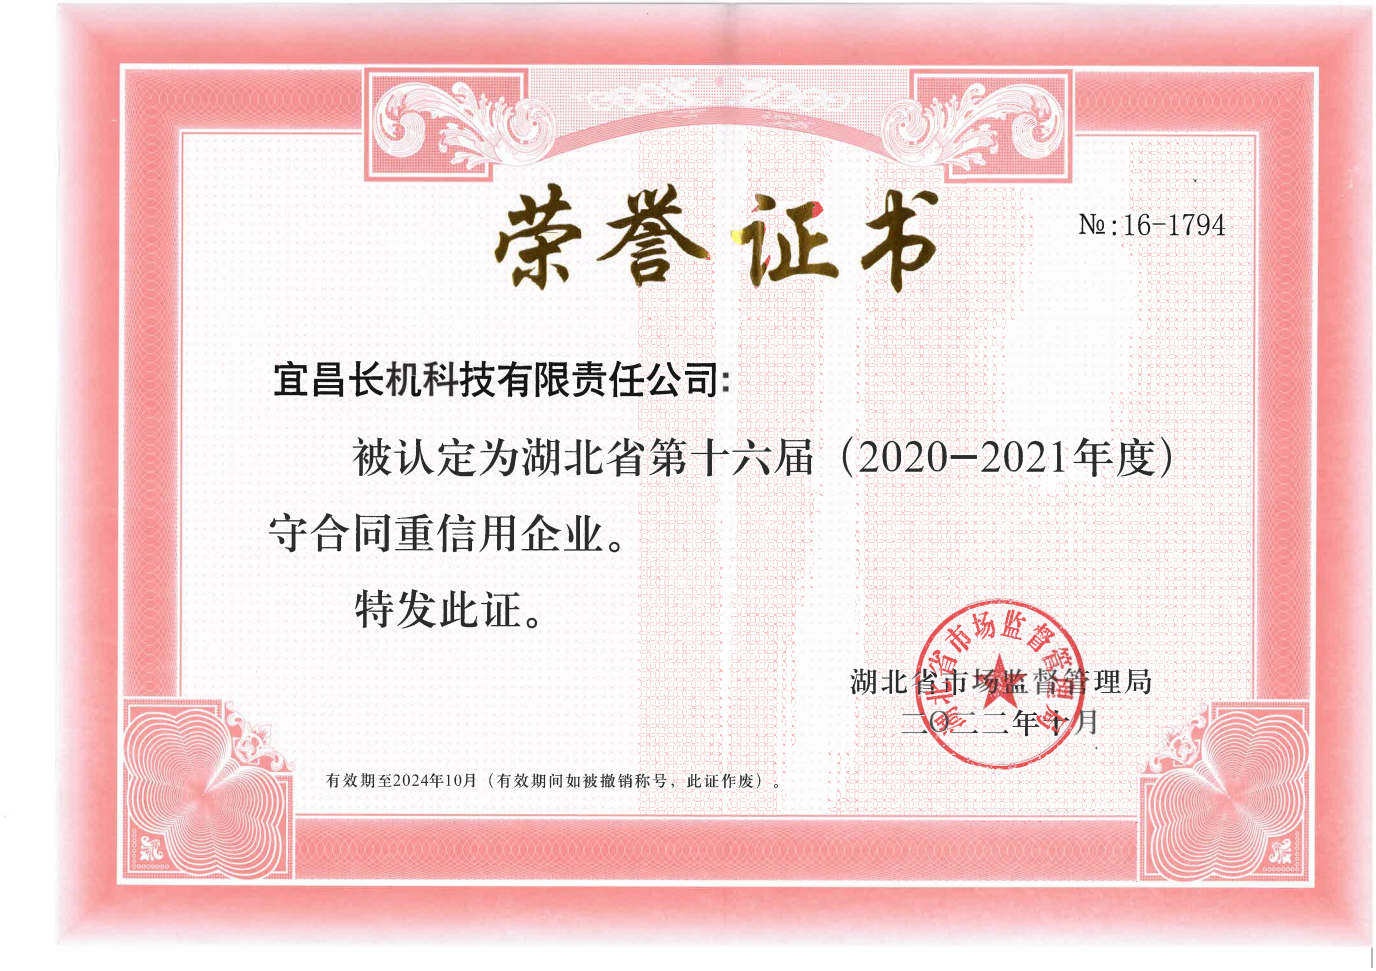 公司被认定为湖北省第十六届（2020-2021年度）“守合同重信用企业”